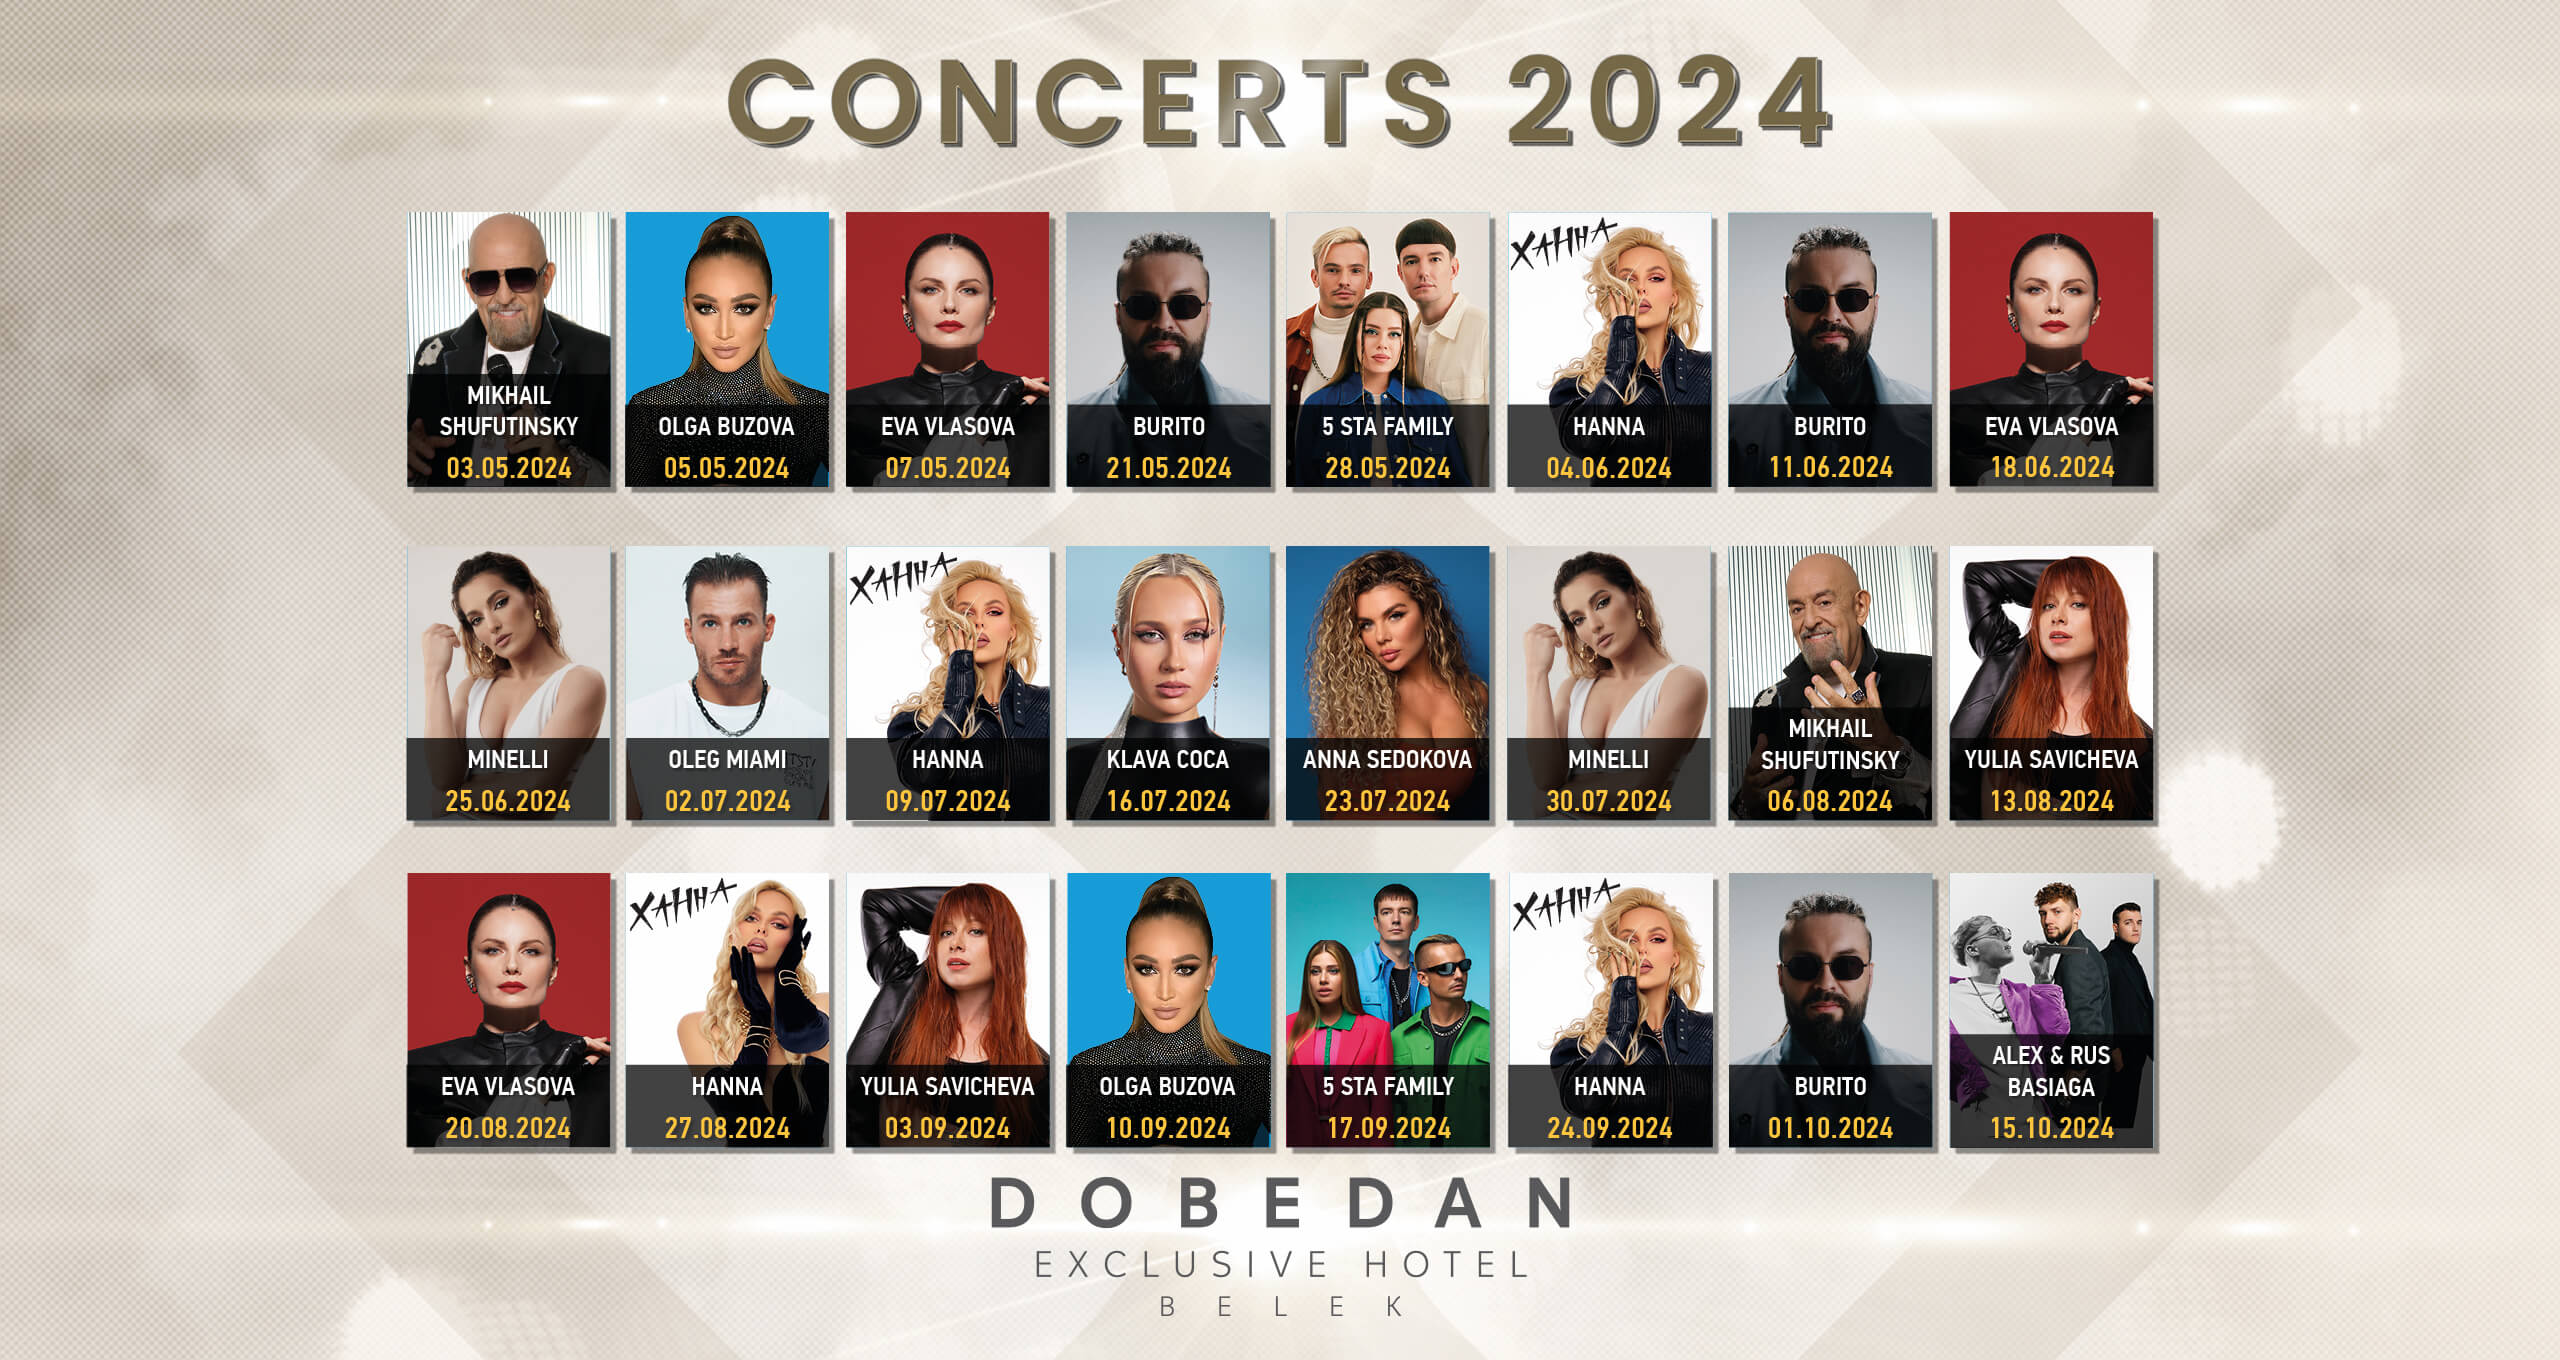 Dobedan Exclusive Belek Concerts 2024